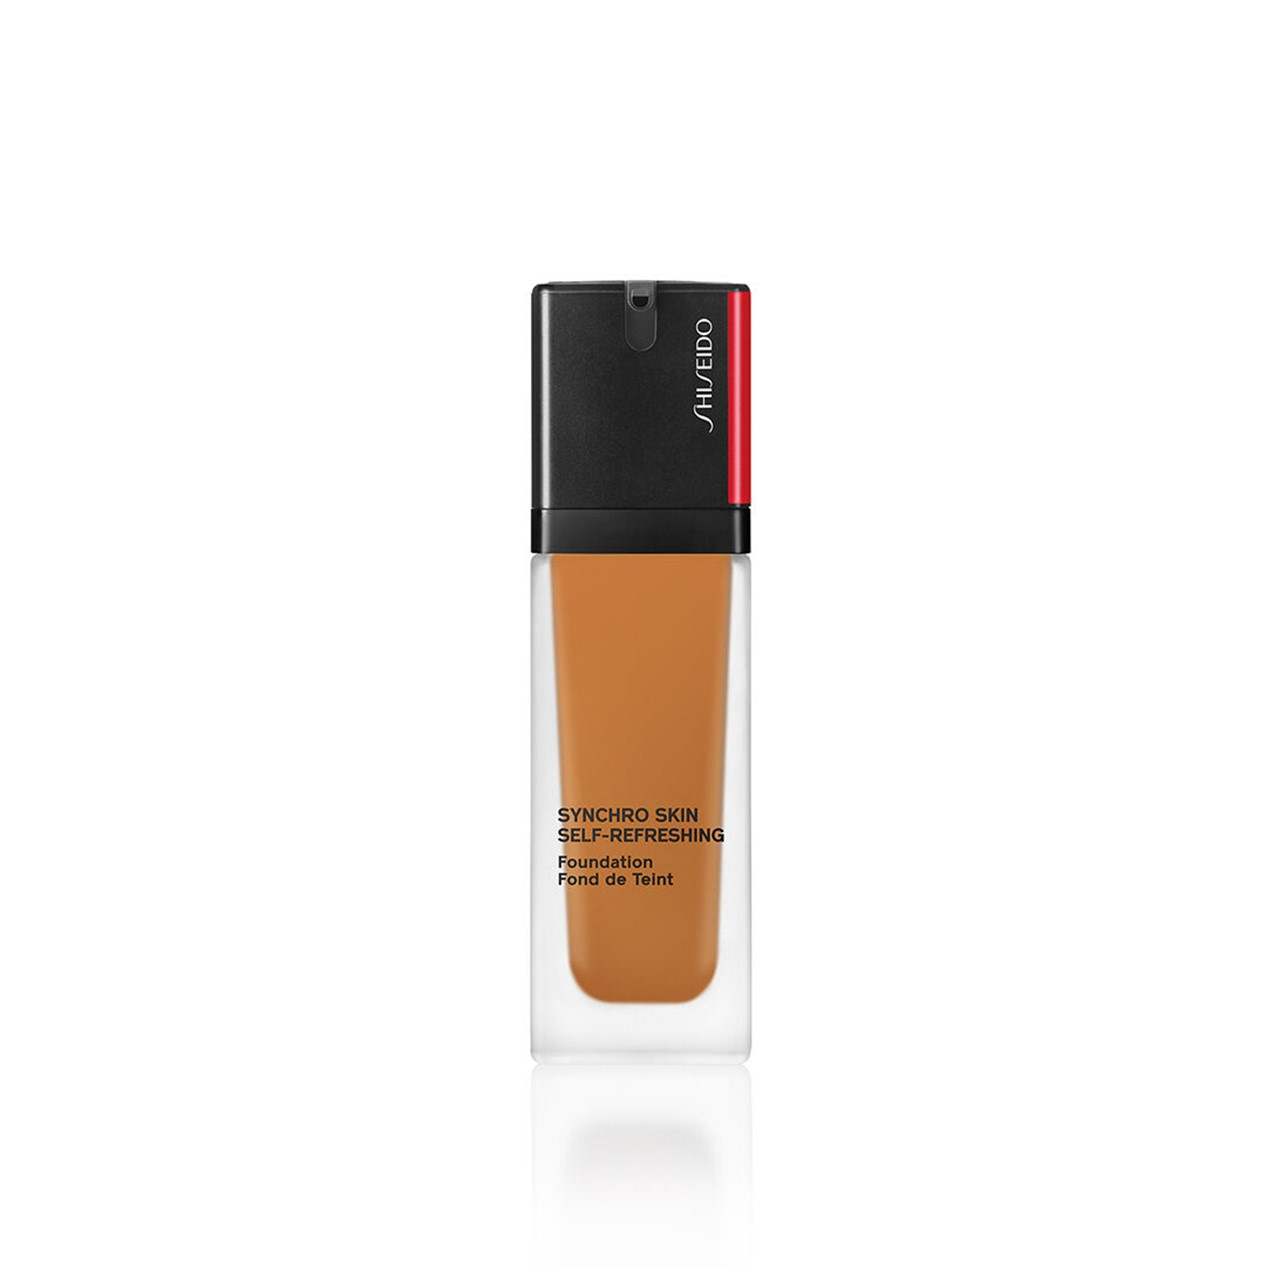 Shiseido Synchro Skin Self-Refreshing Foundation SPF30 430 Cedar 30ml (1.01fl oz)